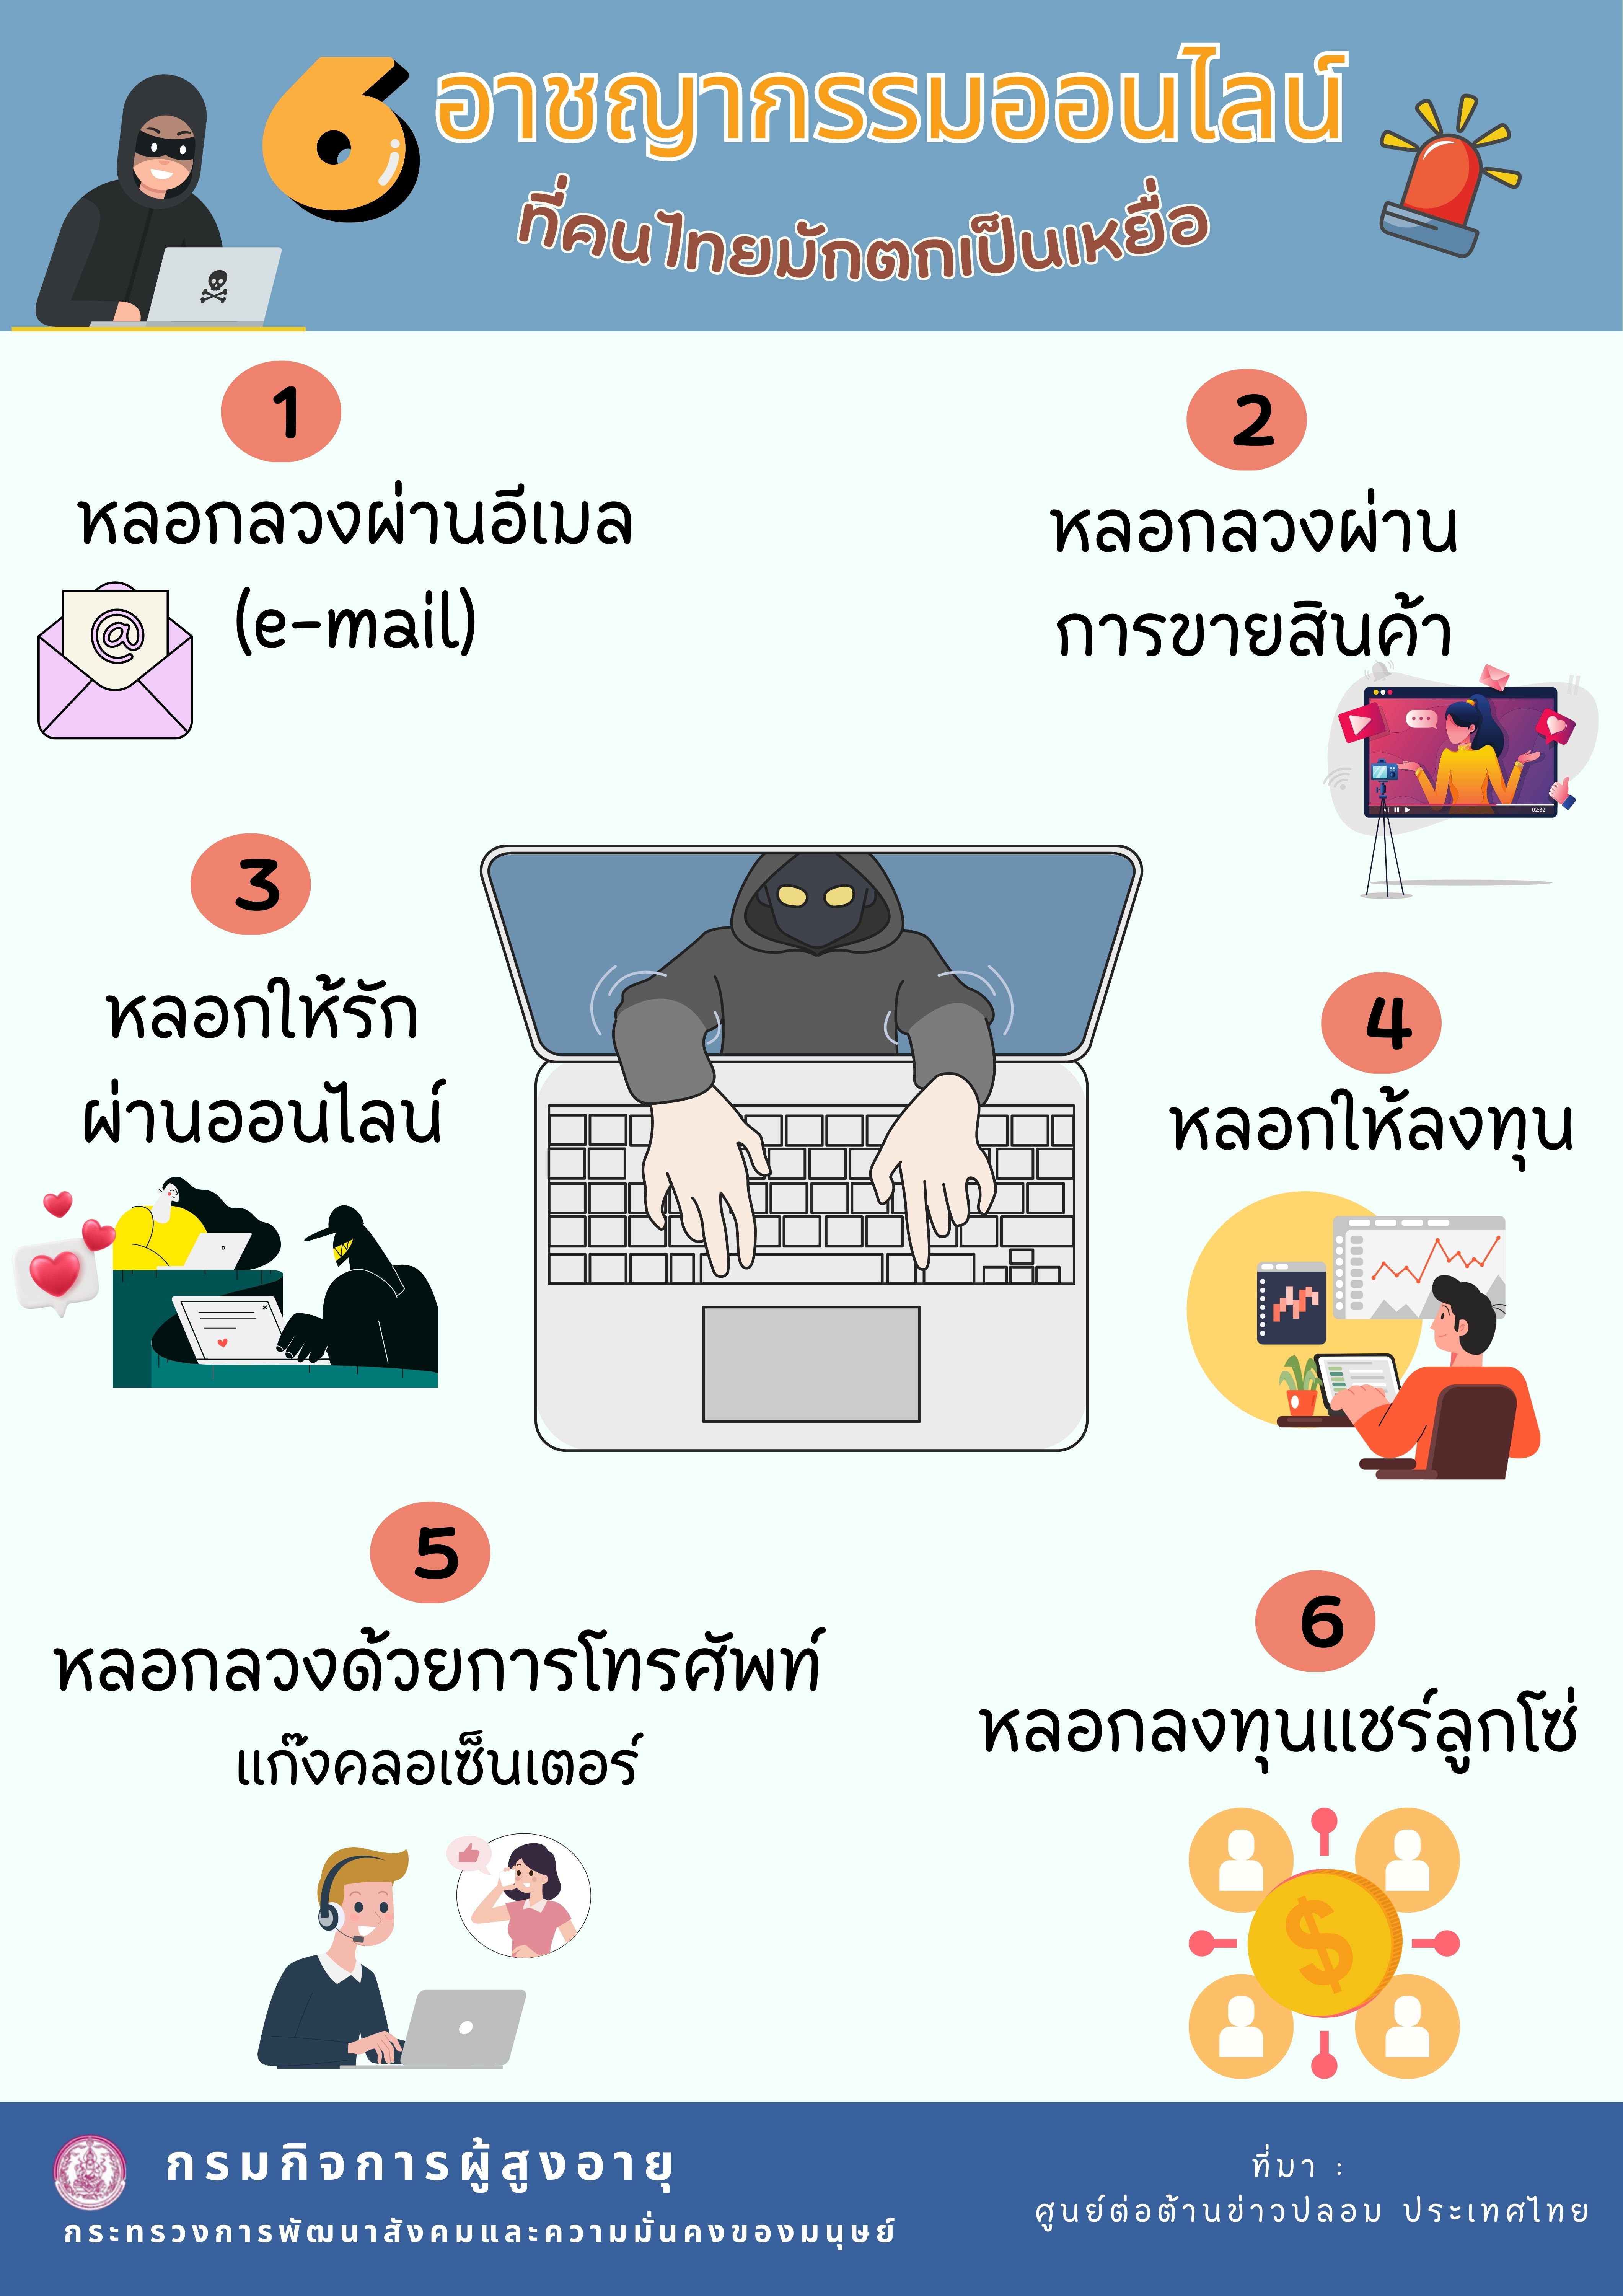 6 อาชญากรรมออนไลน์ ที่คนไทยมักตกเป็นเหยื่อ